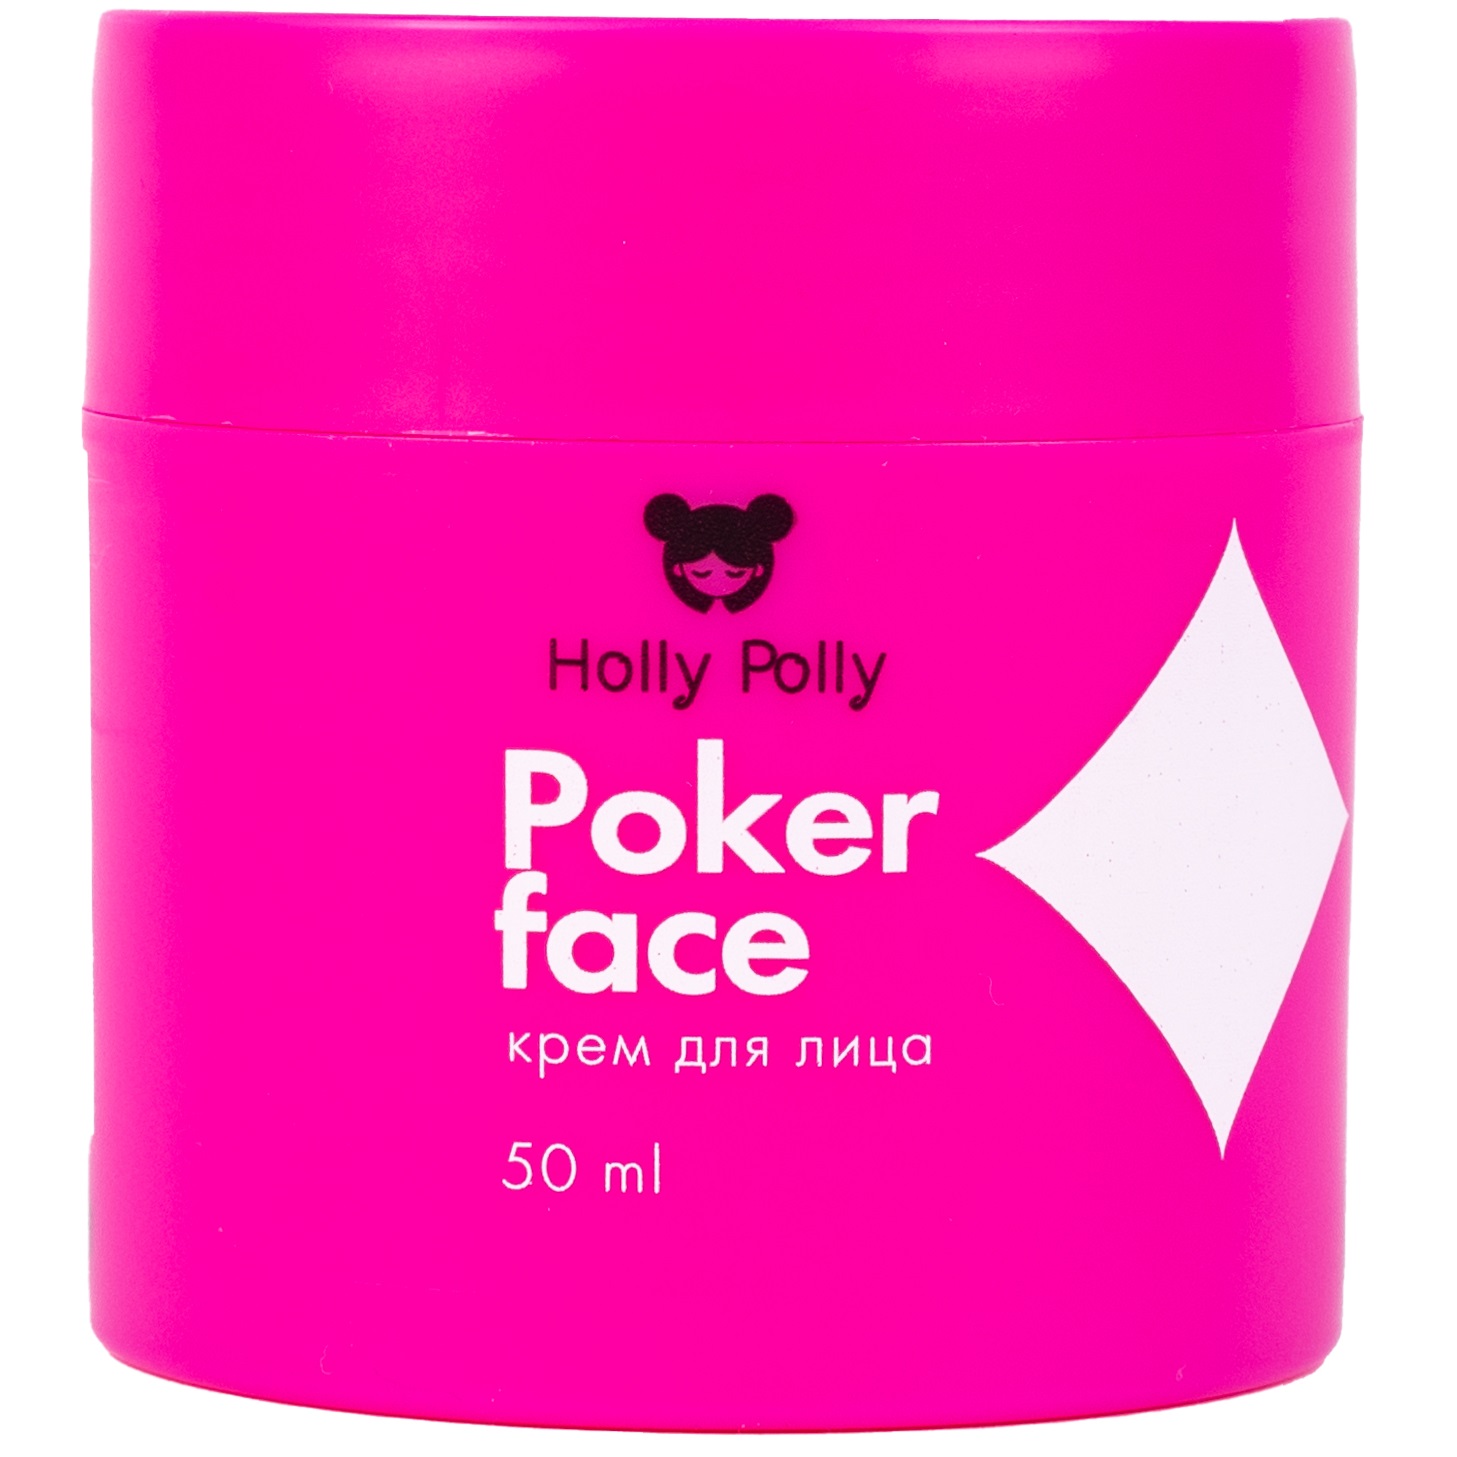 Holly Polly Крем для увлажнения, питания и сияния лица, 50 мл (Holly Polly, Poker Face)